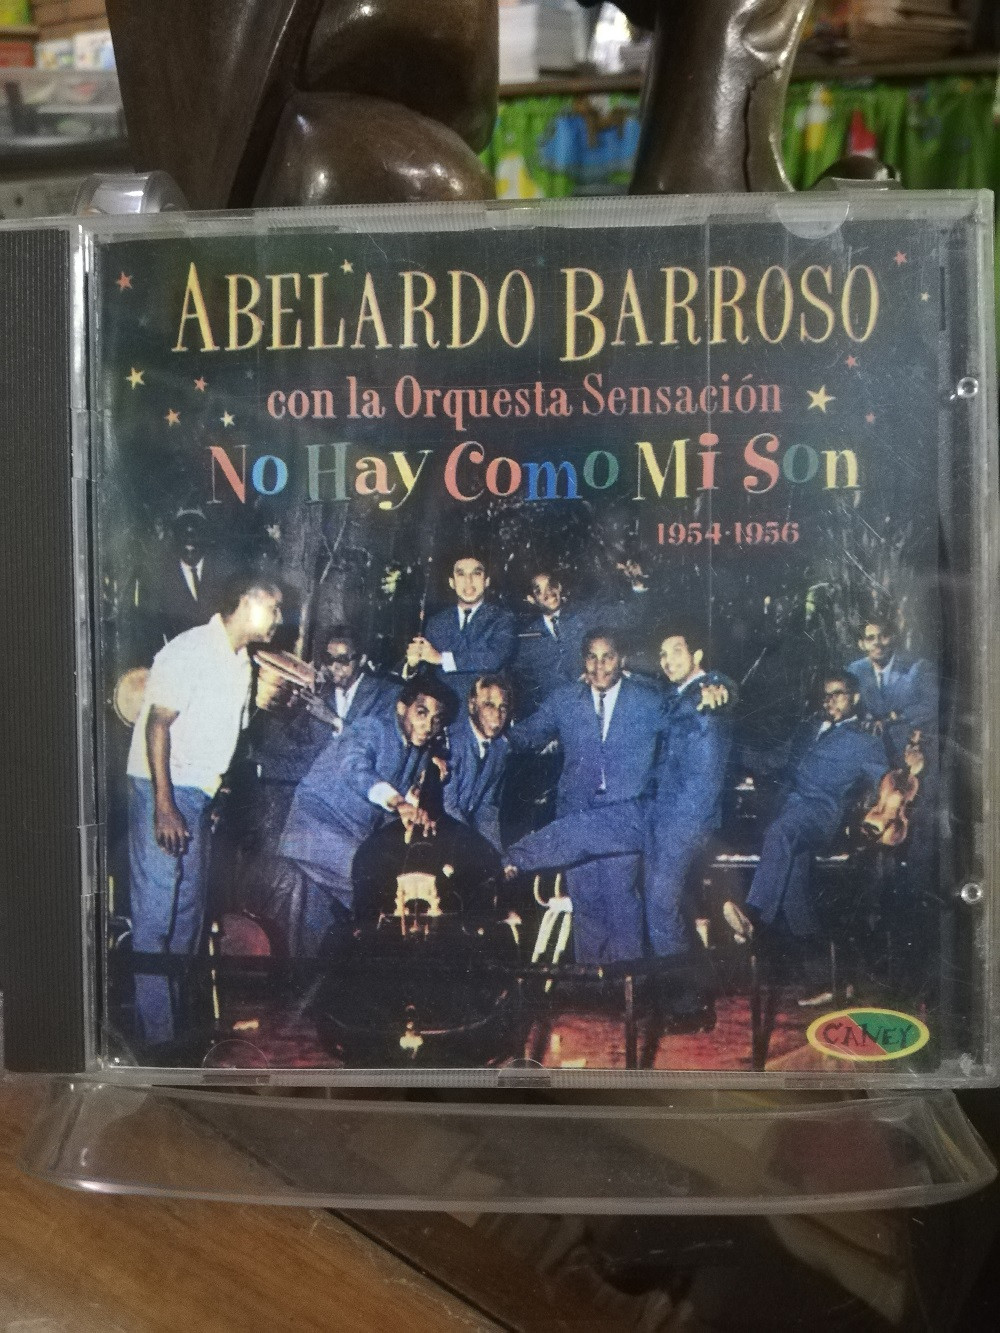 Imagen CD ABELARDO BARROSO CON LA ORQUESTA SENSACIÓN - NO HAY COMO MI SON 1954-1956 1